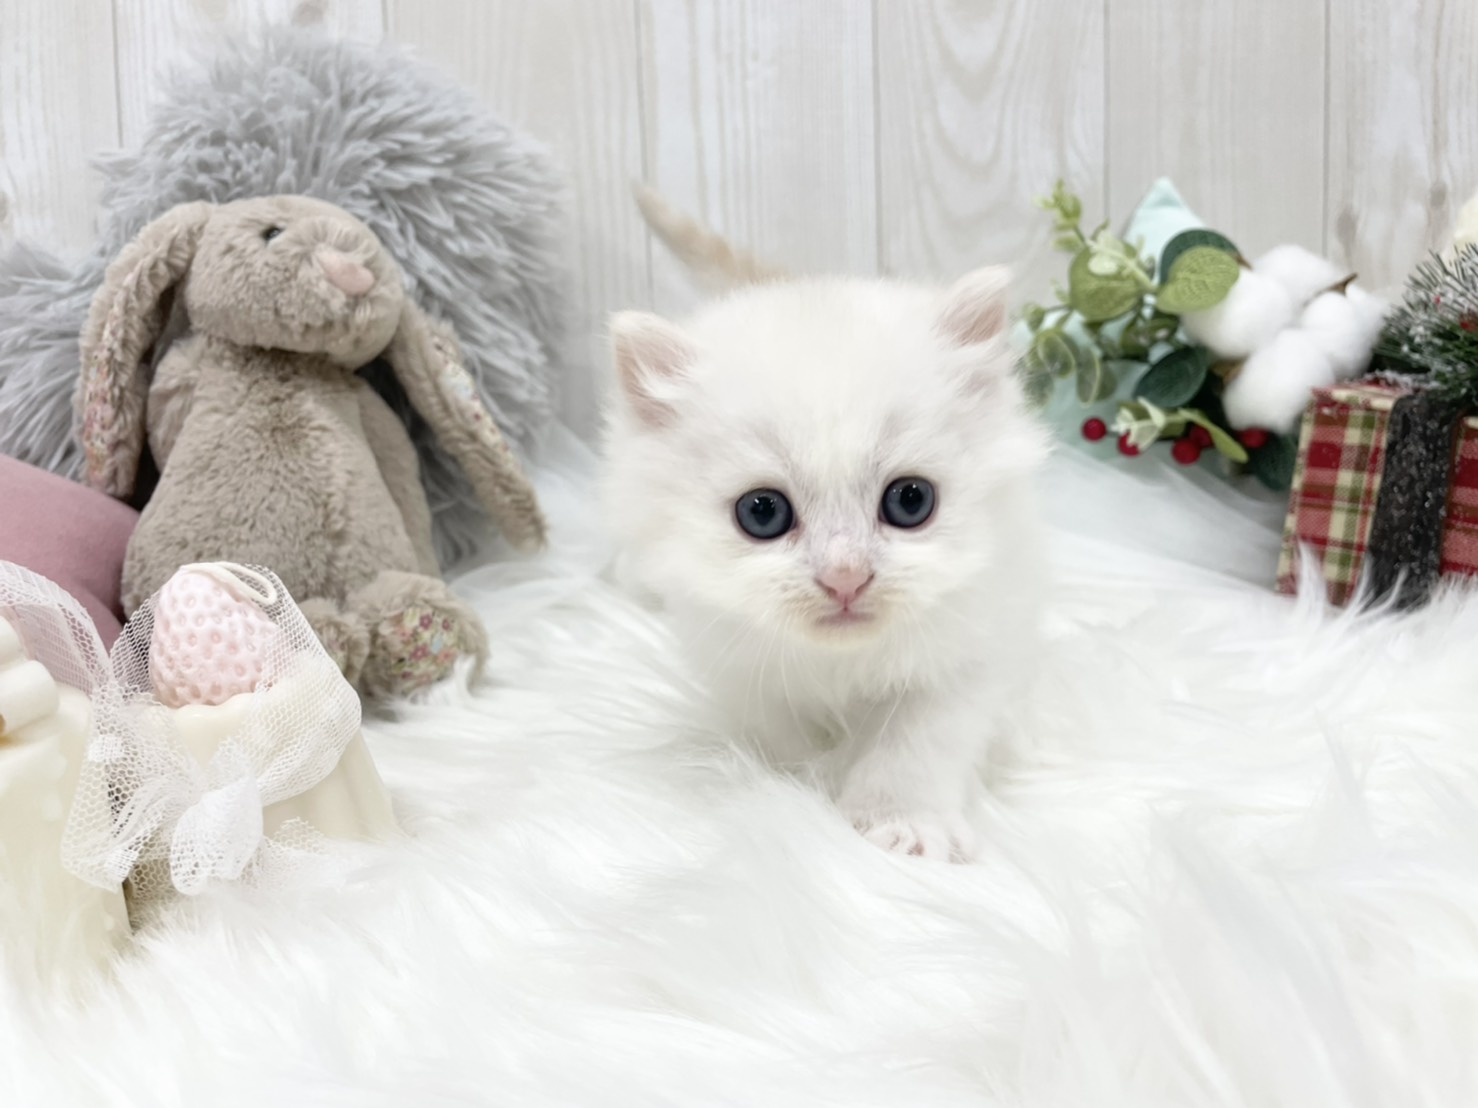 マンチカン レッド ホワイト 可愛い男の子 サイベリアン ラグドールの大型猫マンチカン ミヌエットの短足猫ねこブリーダーのフルーフィーコットです